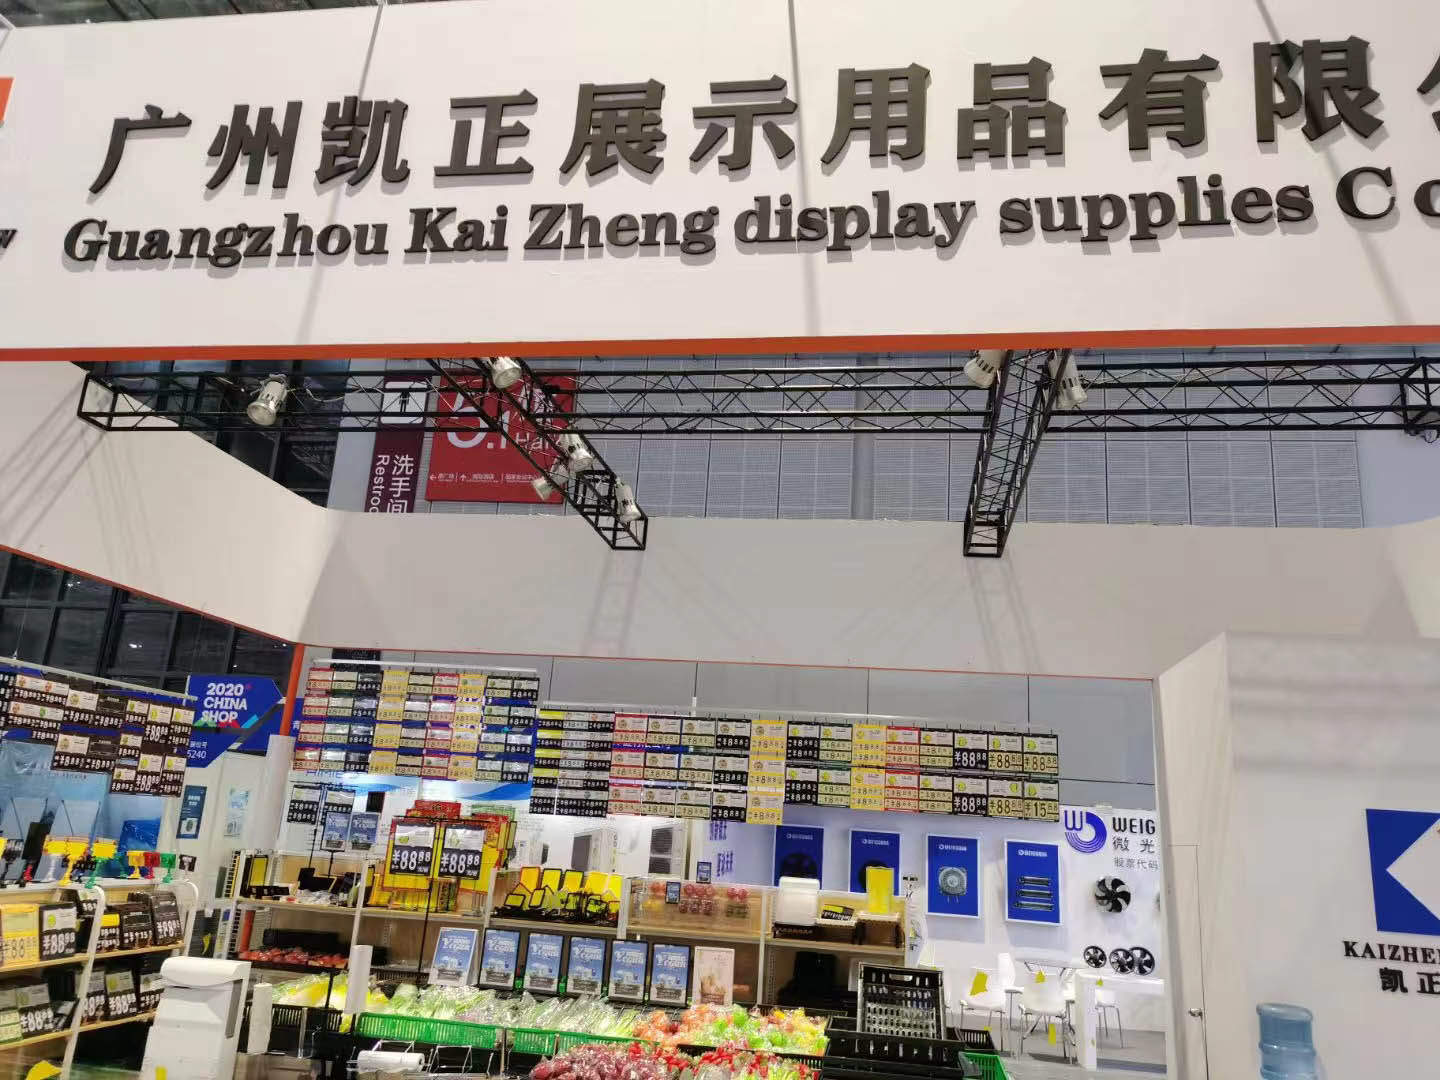 ظهرت شركة قوانغتشو Kaizheng Display Products Co., Ltd. في معرض صناعة التجزئة في شنغهاي